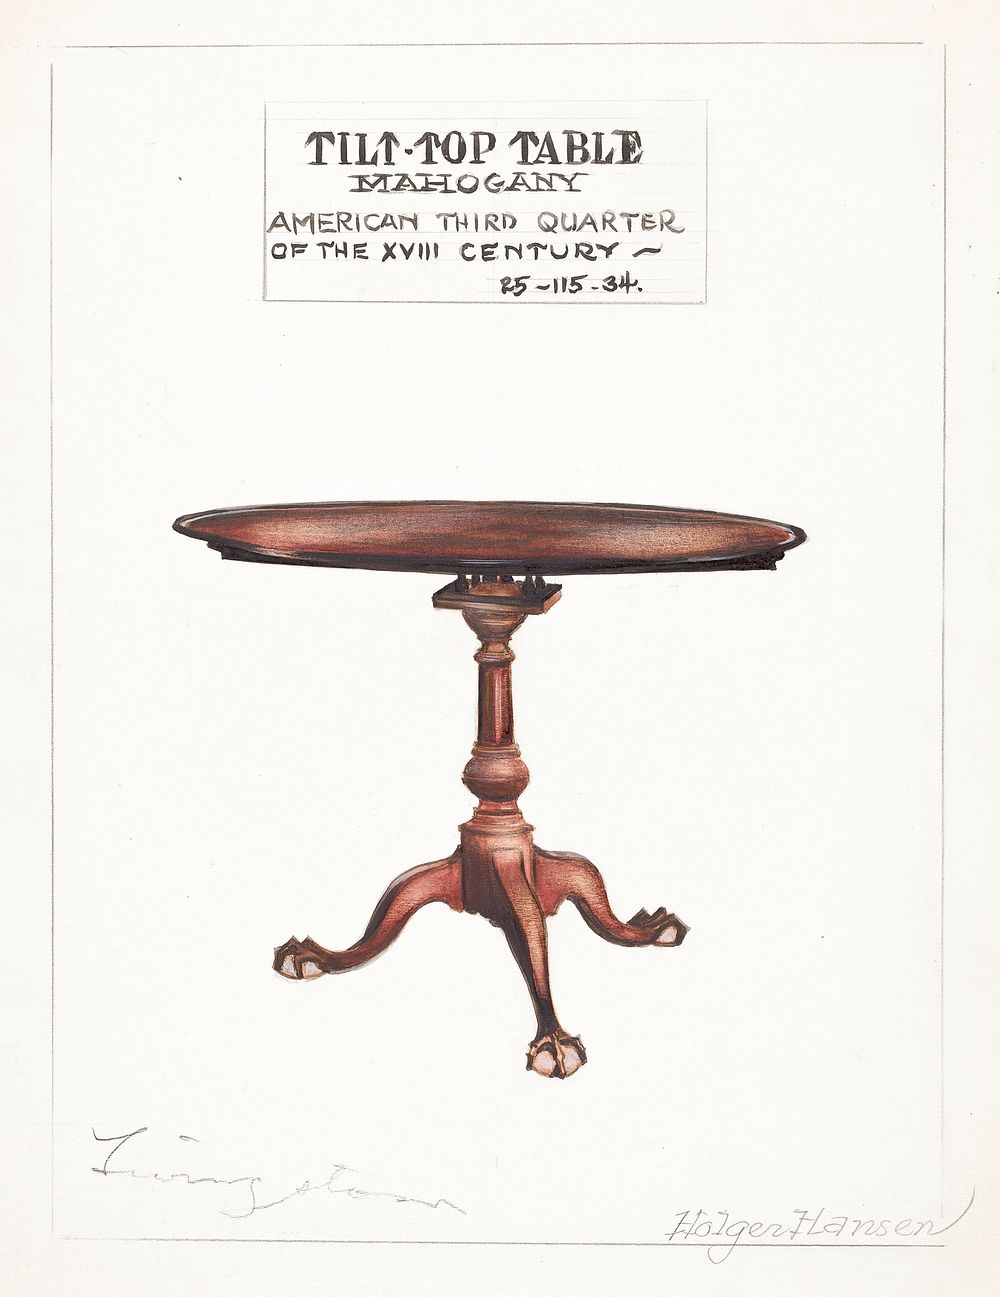 Tilt-top Table (1935&ndash;1942) by Holger Hansen & Rolland Livingstone. Original from The National Gallery of Art.…